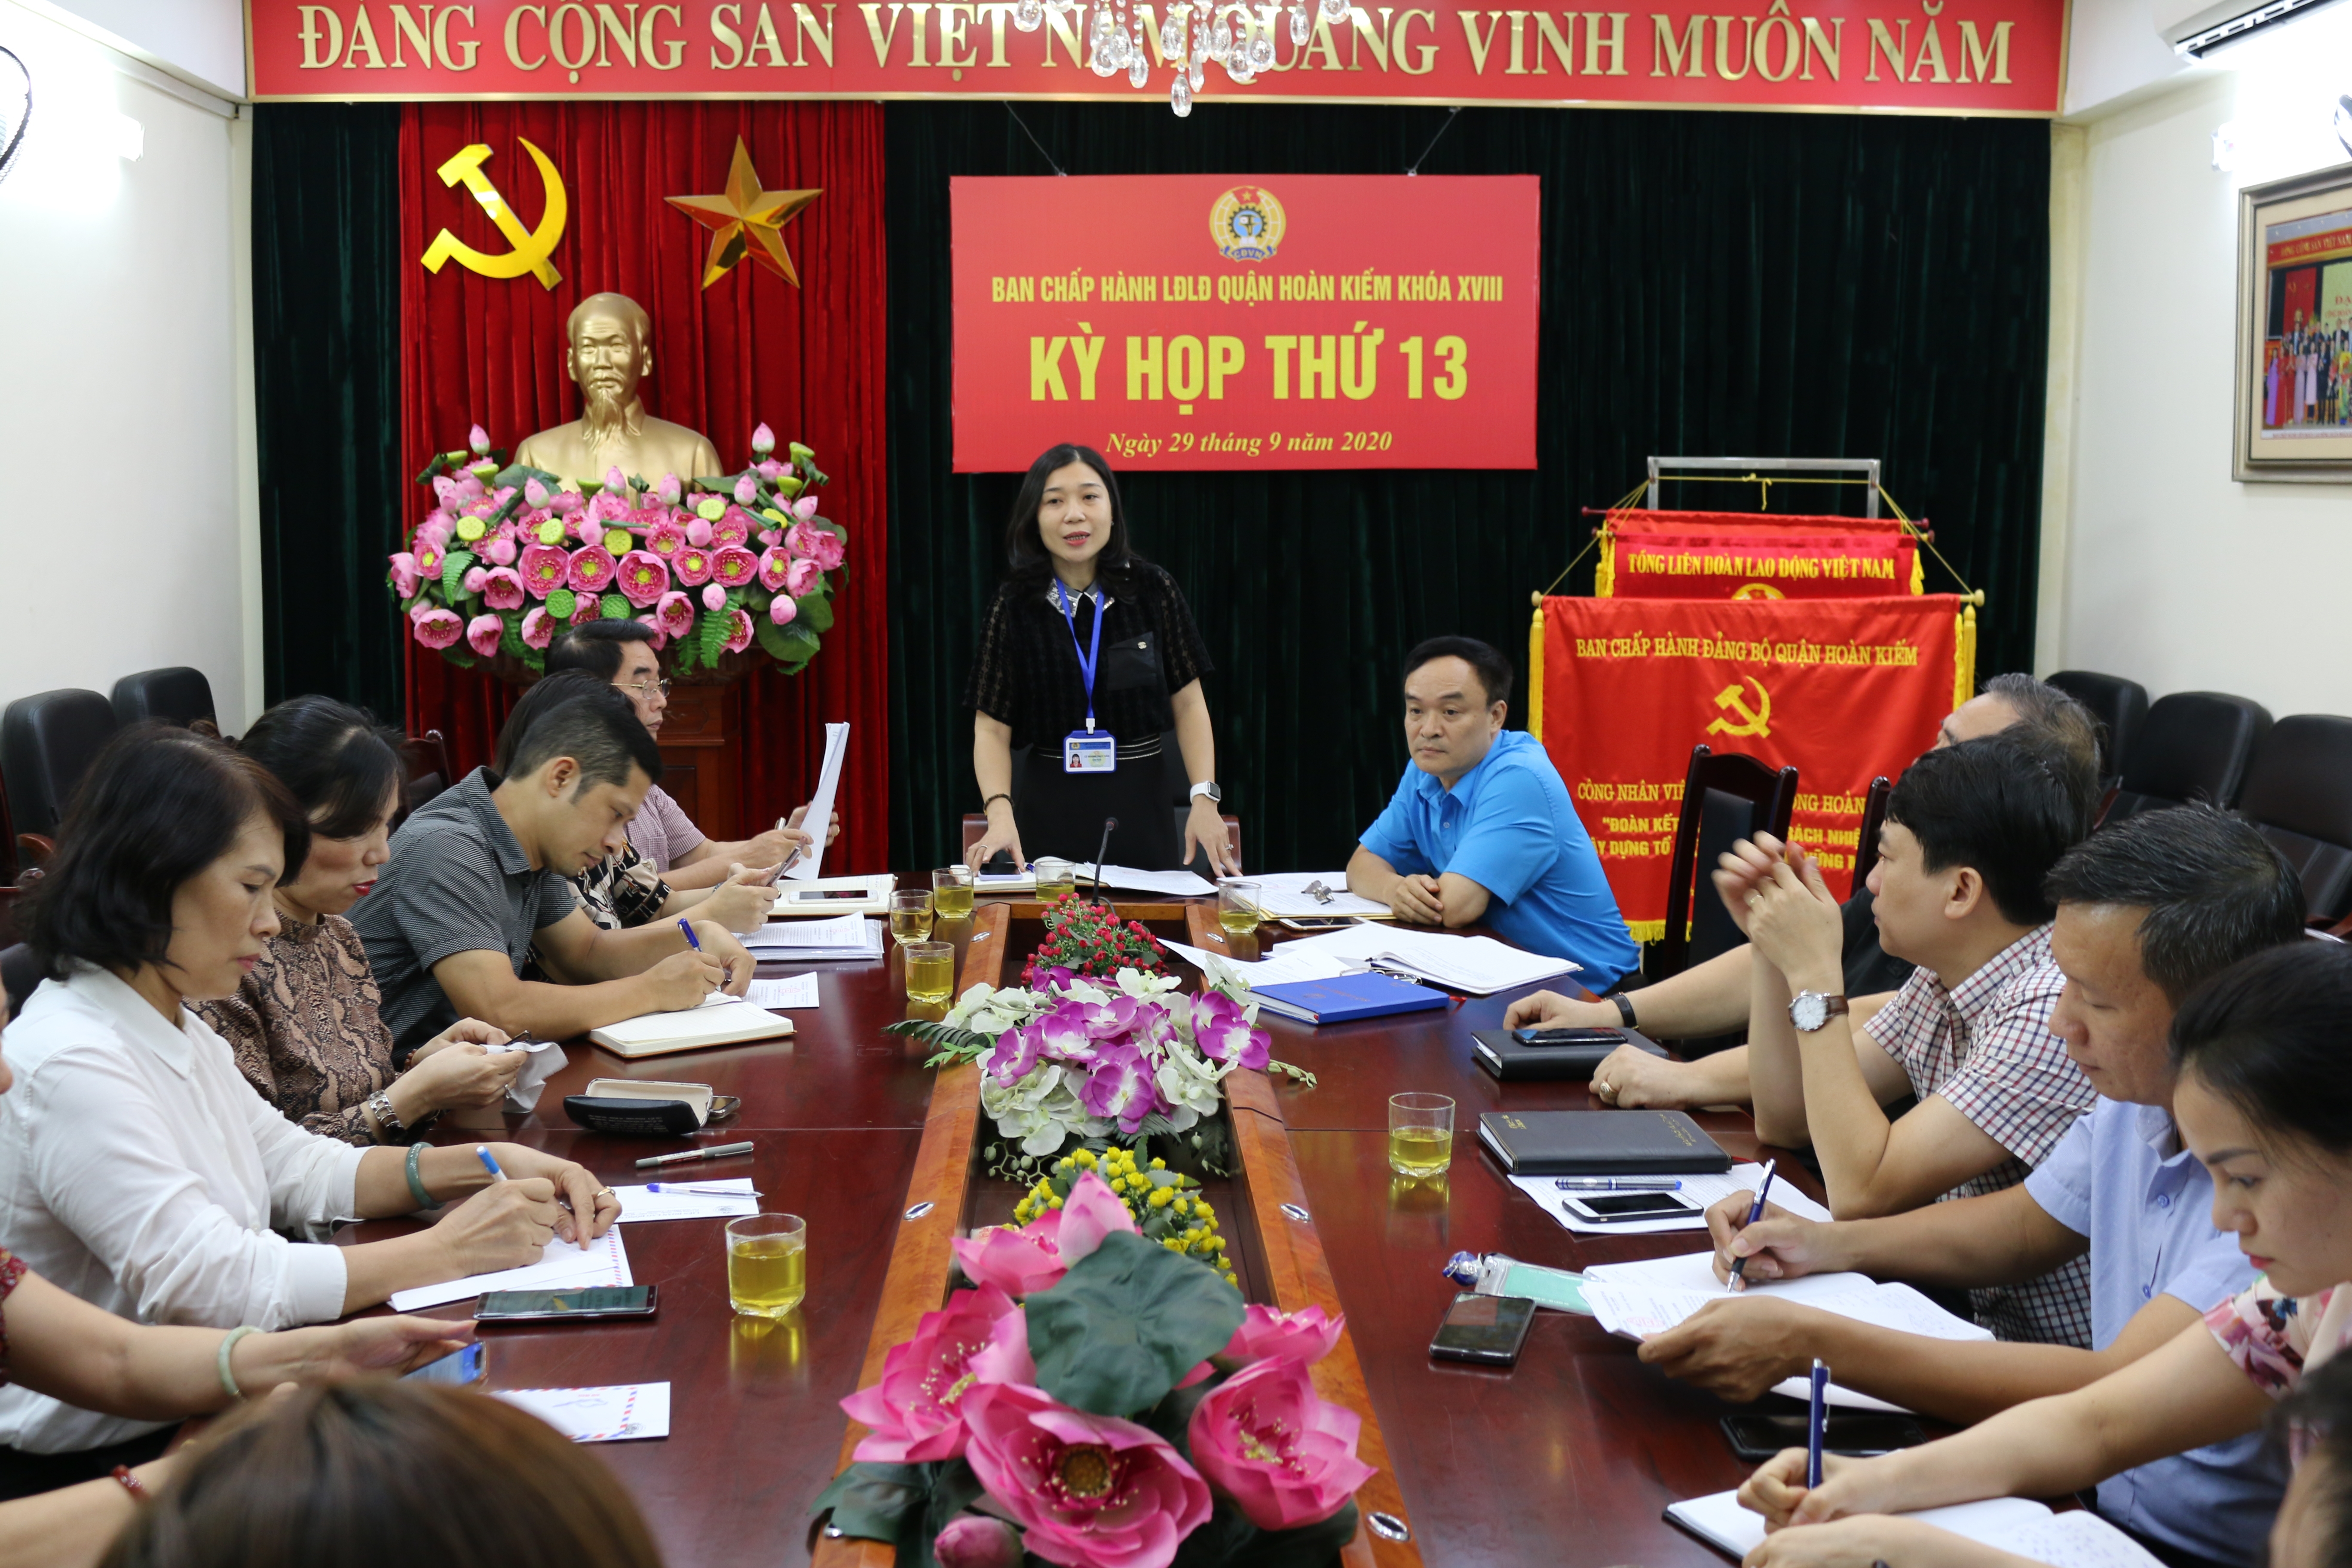 Liên đoàn Lao động quận Hoàn Kiếm: Luôn nỗ lực, hết lòng vì đoàn viên, người lao động